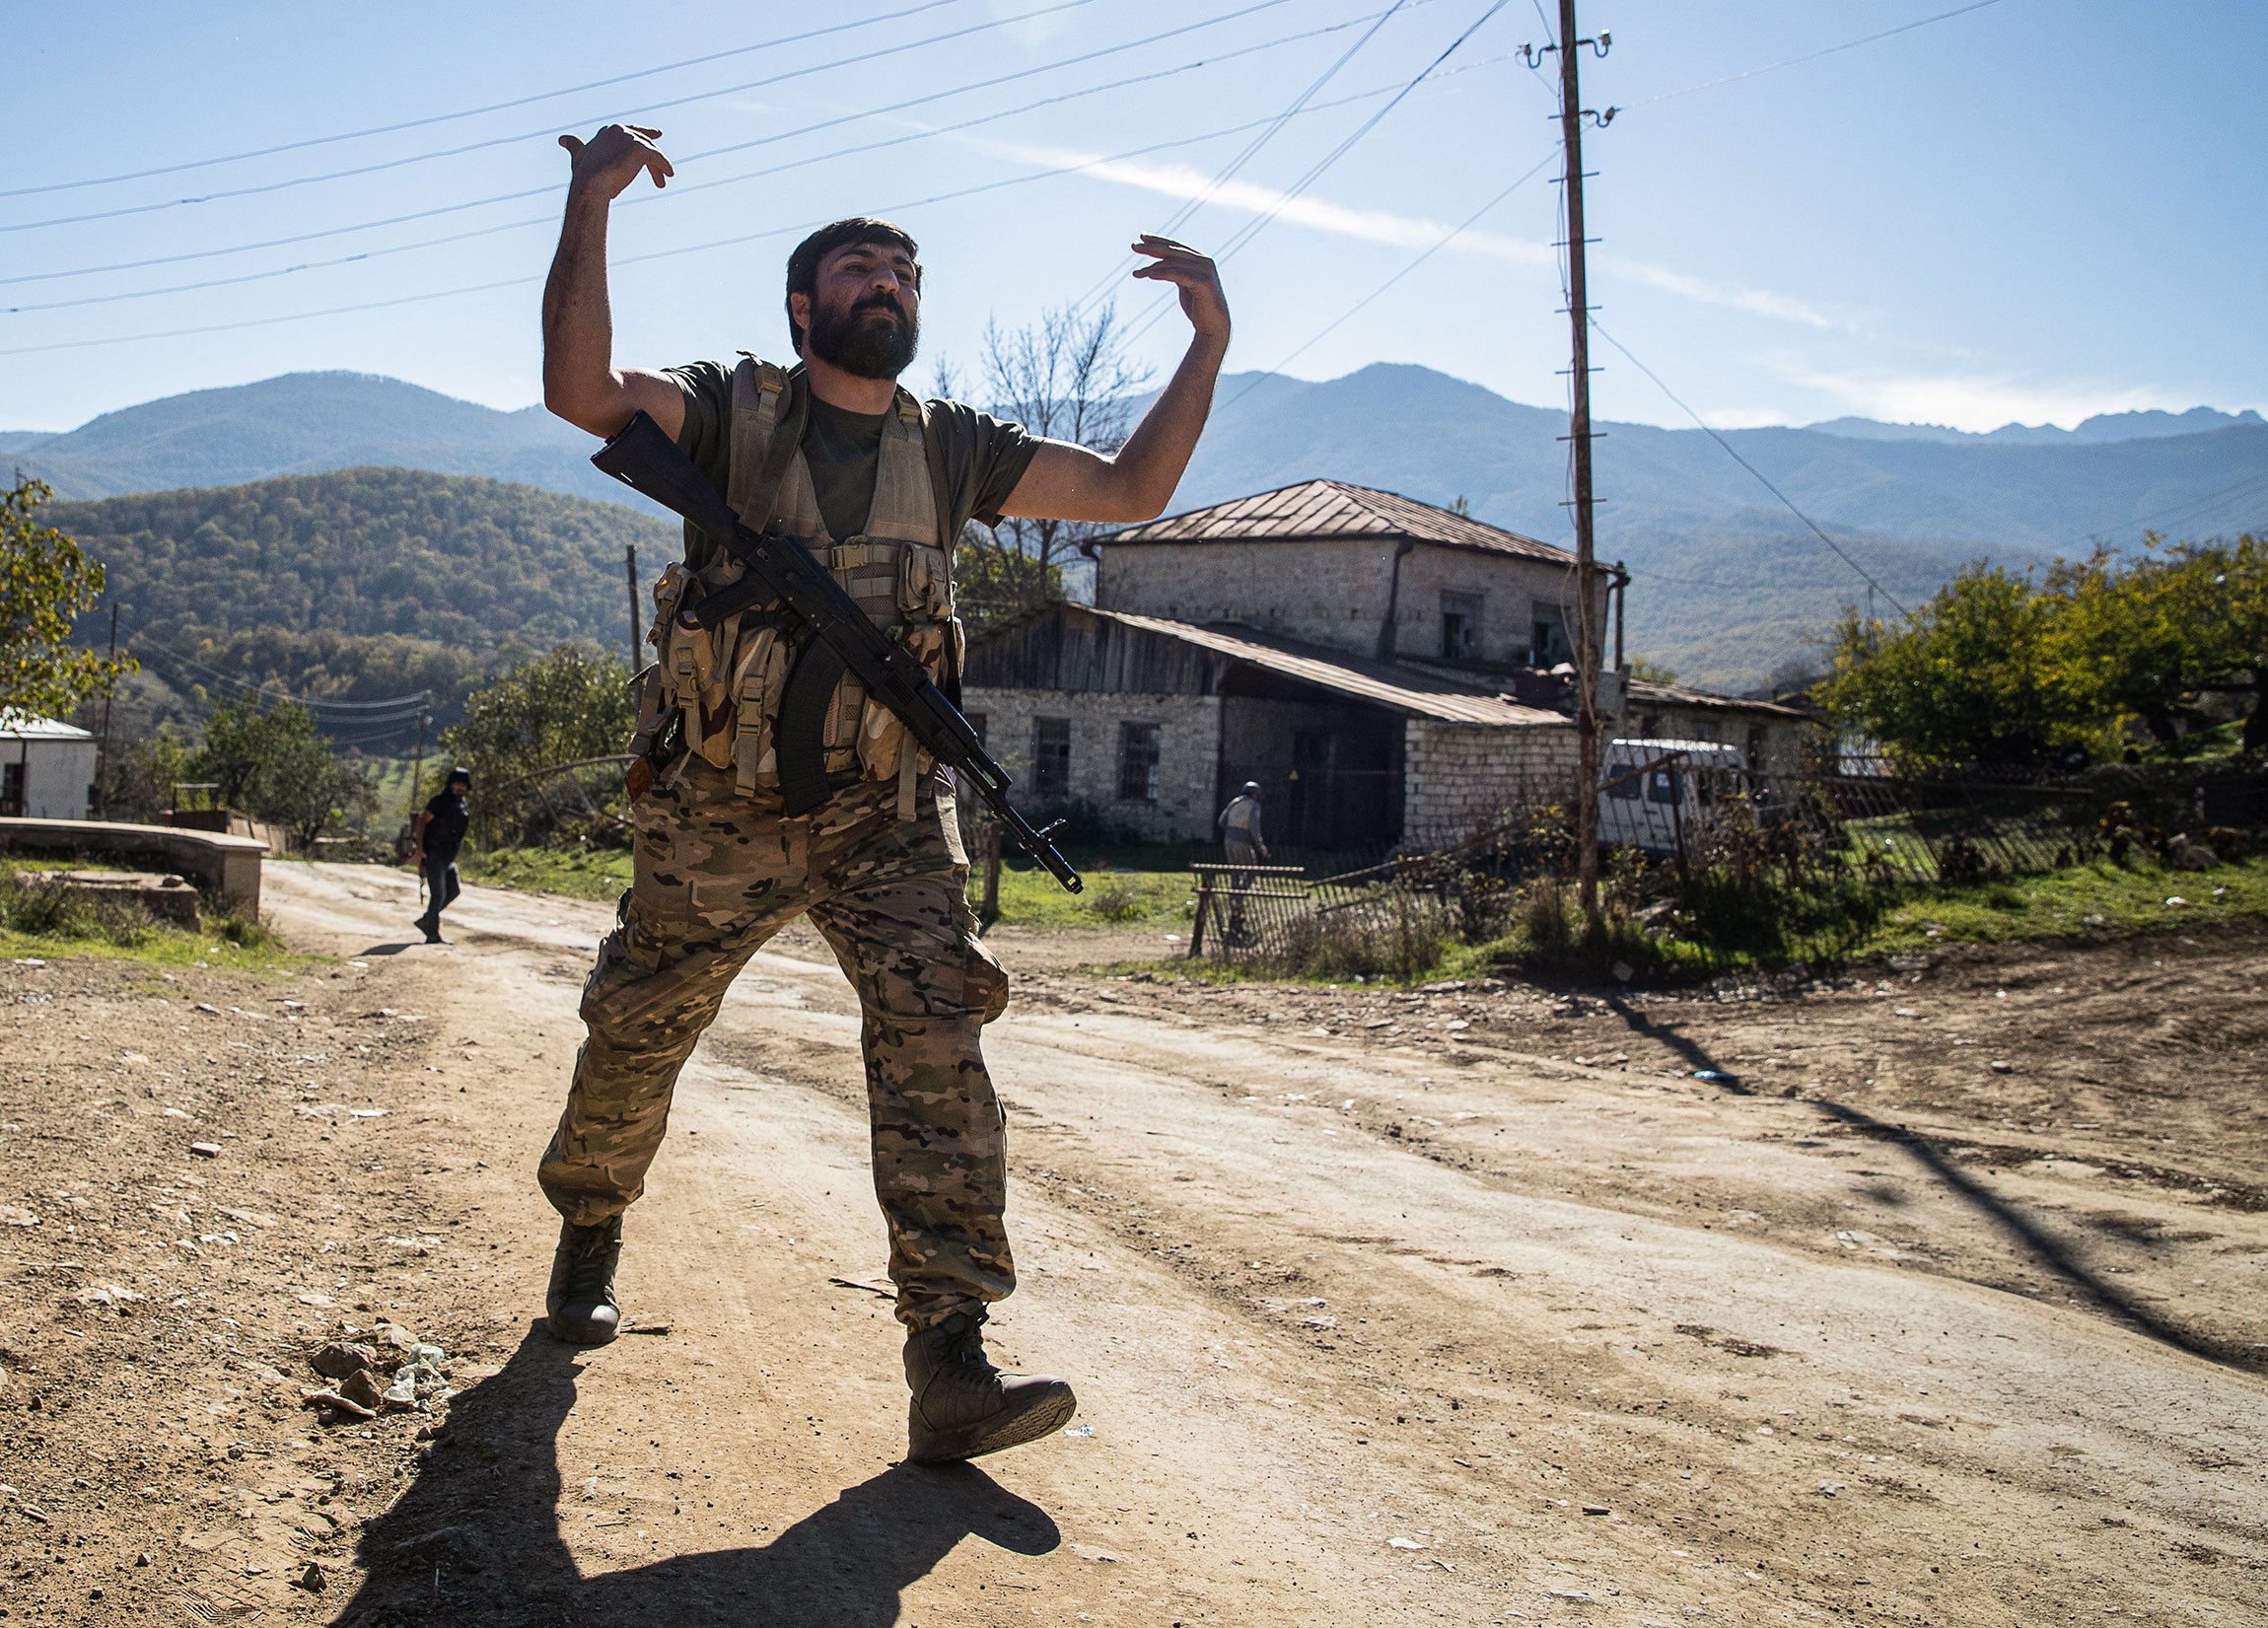 Село&nbsp;Аветараноц в&nbsp;Нагорном&nbsp;Карабахе было обстреляно 26 октября, несмотря на очередные&nbsp;договоренности&nbsp;о перемирии 25 октября. Сообщалось о гибели одного и ранениях&nbsp;двух мирных жителей